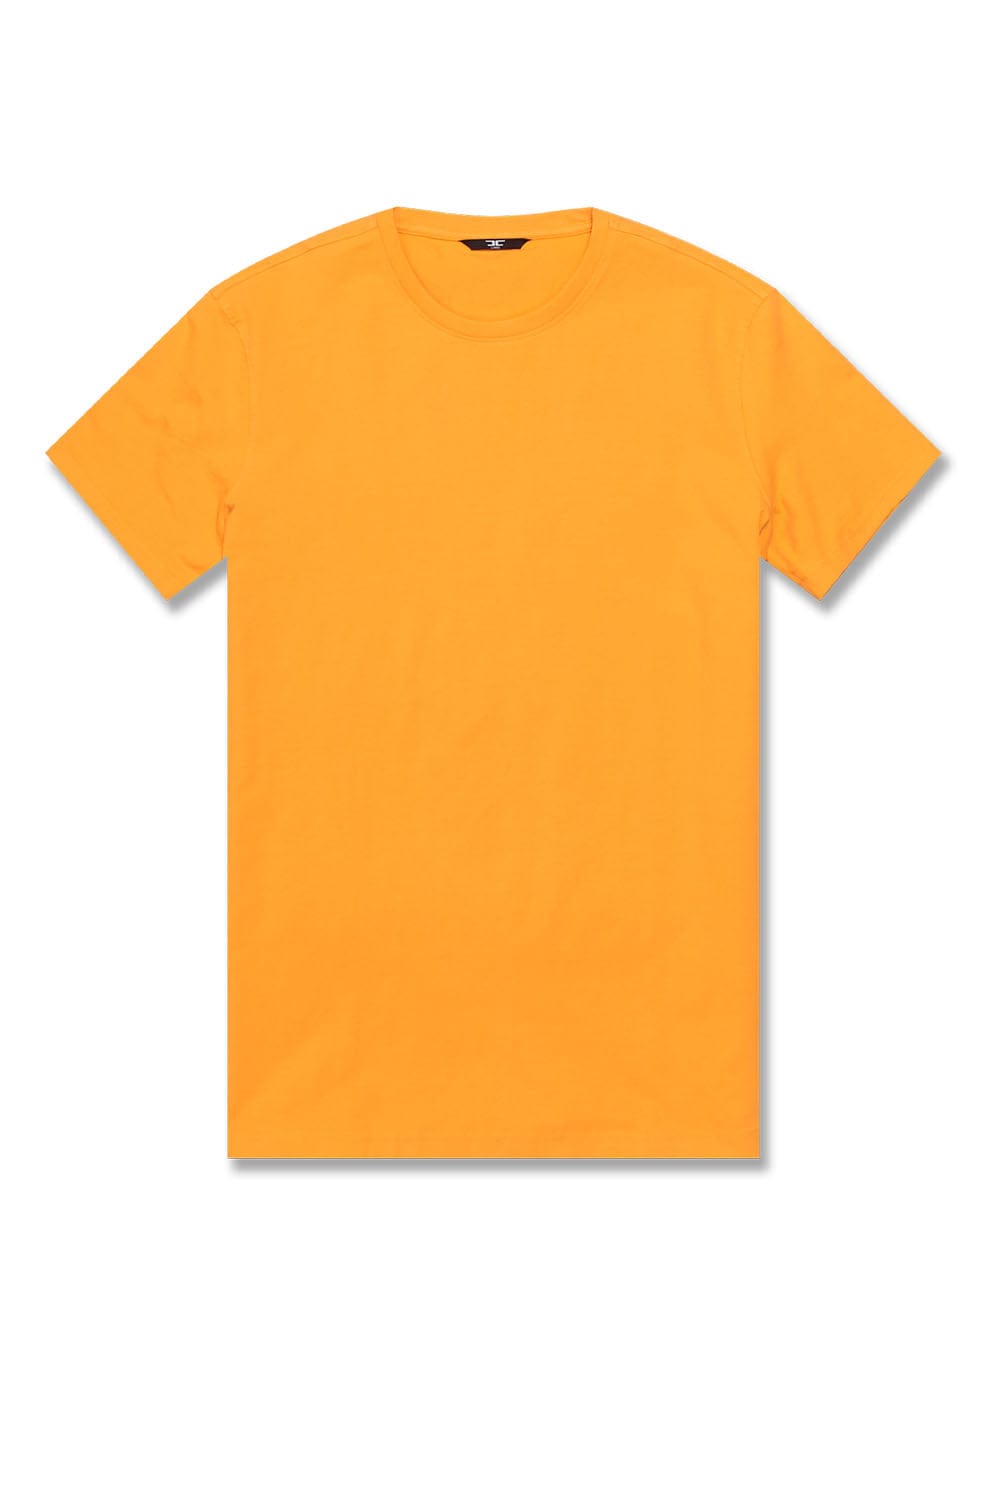 Jordan Craig Premium Crewneck T-Shirt Orange / S